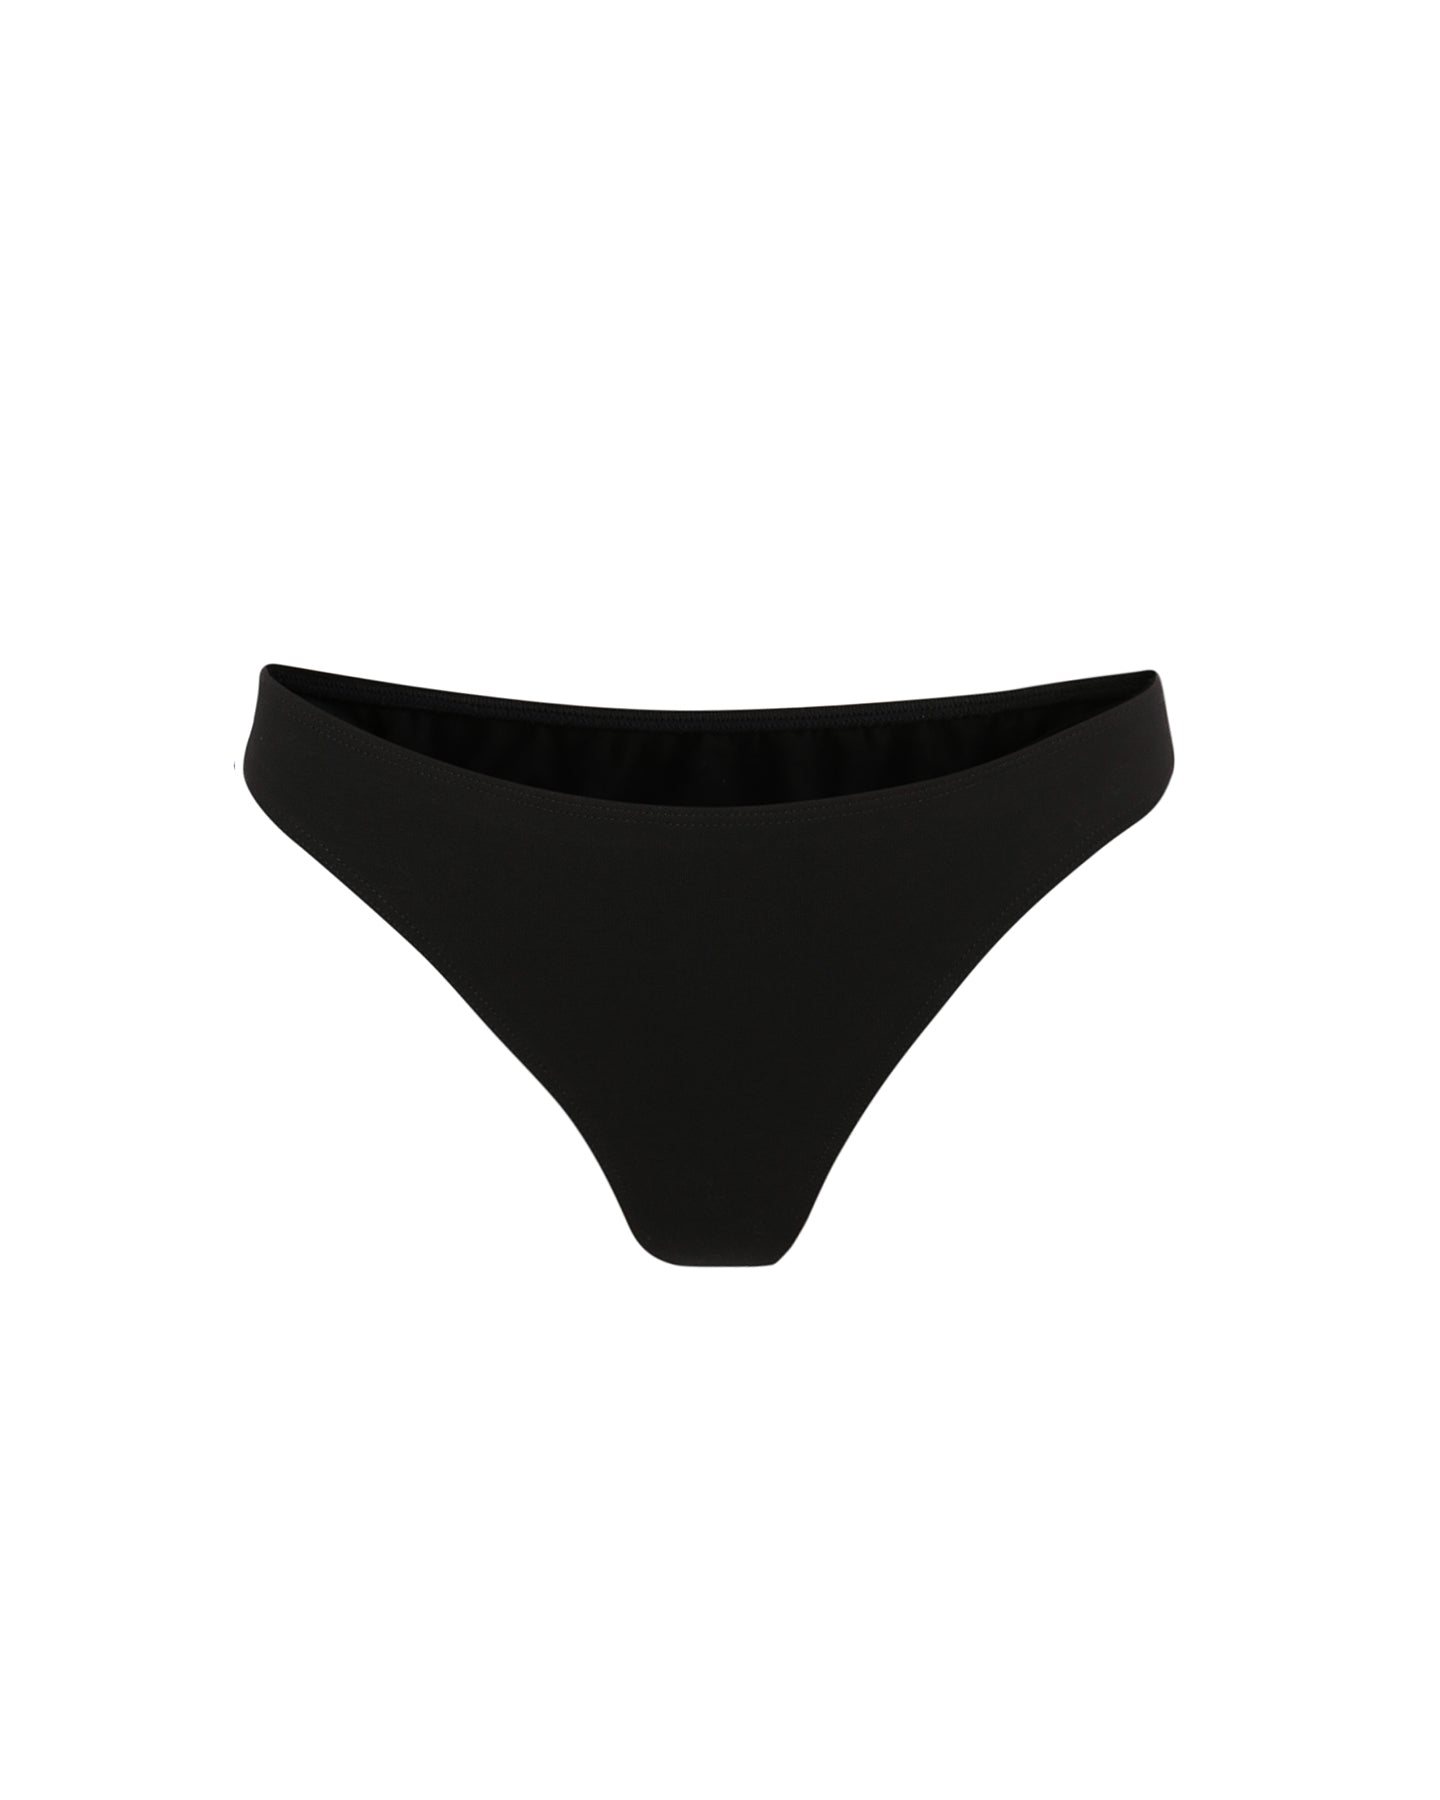 Black organic cotton underwear | Women's underwear | Brazilian Knickers | Lyzawear